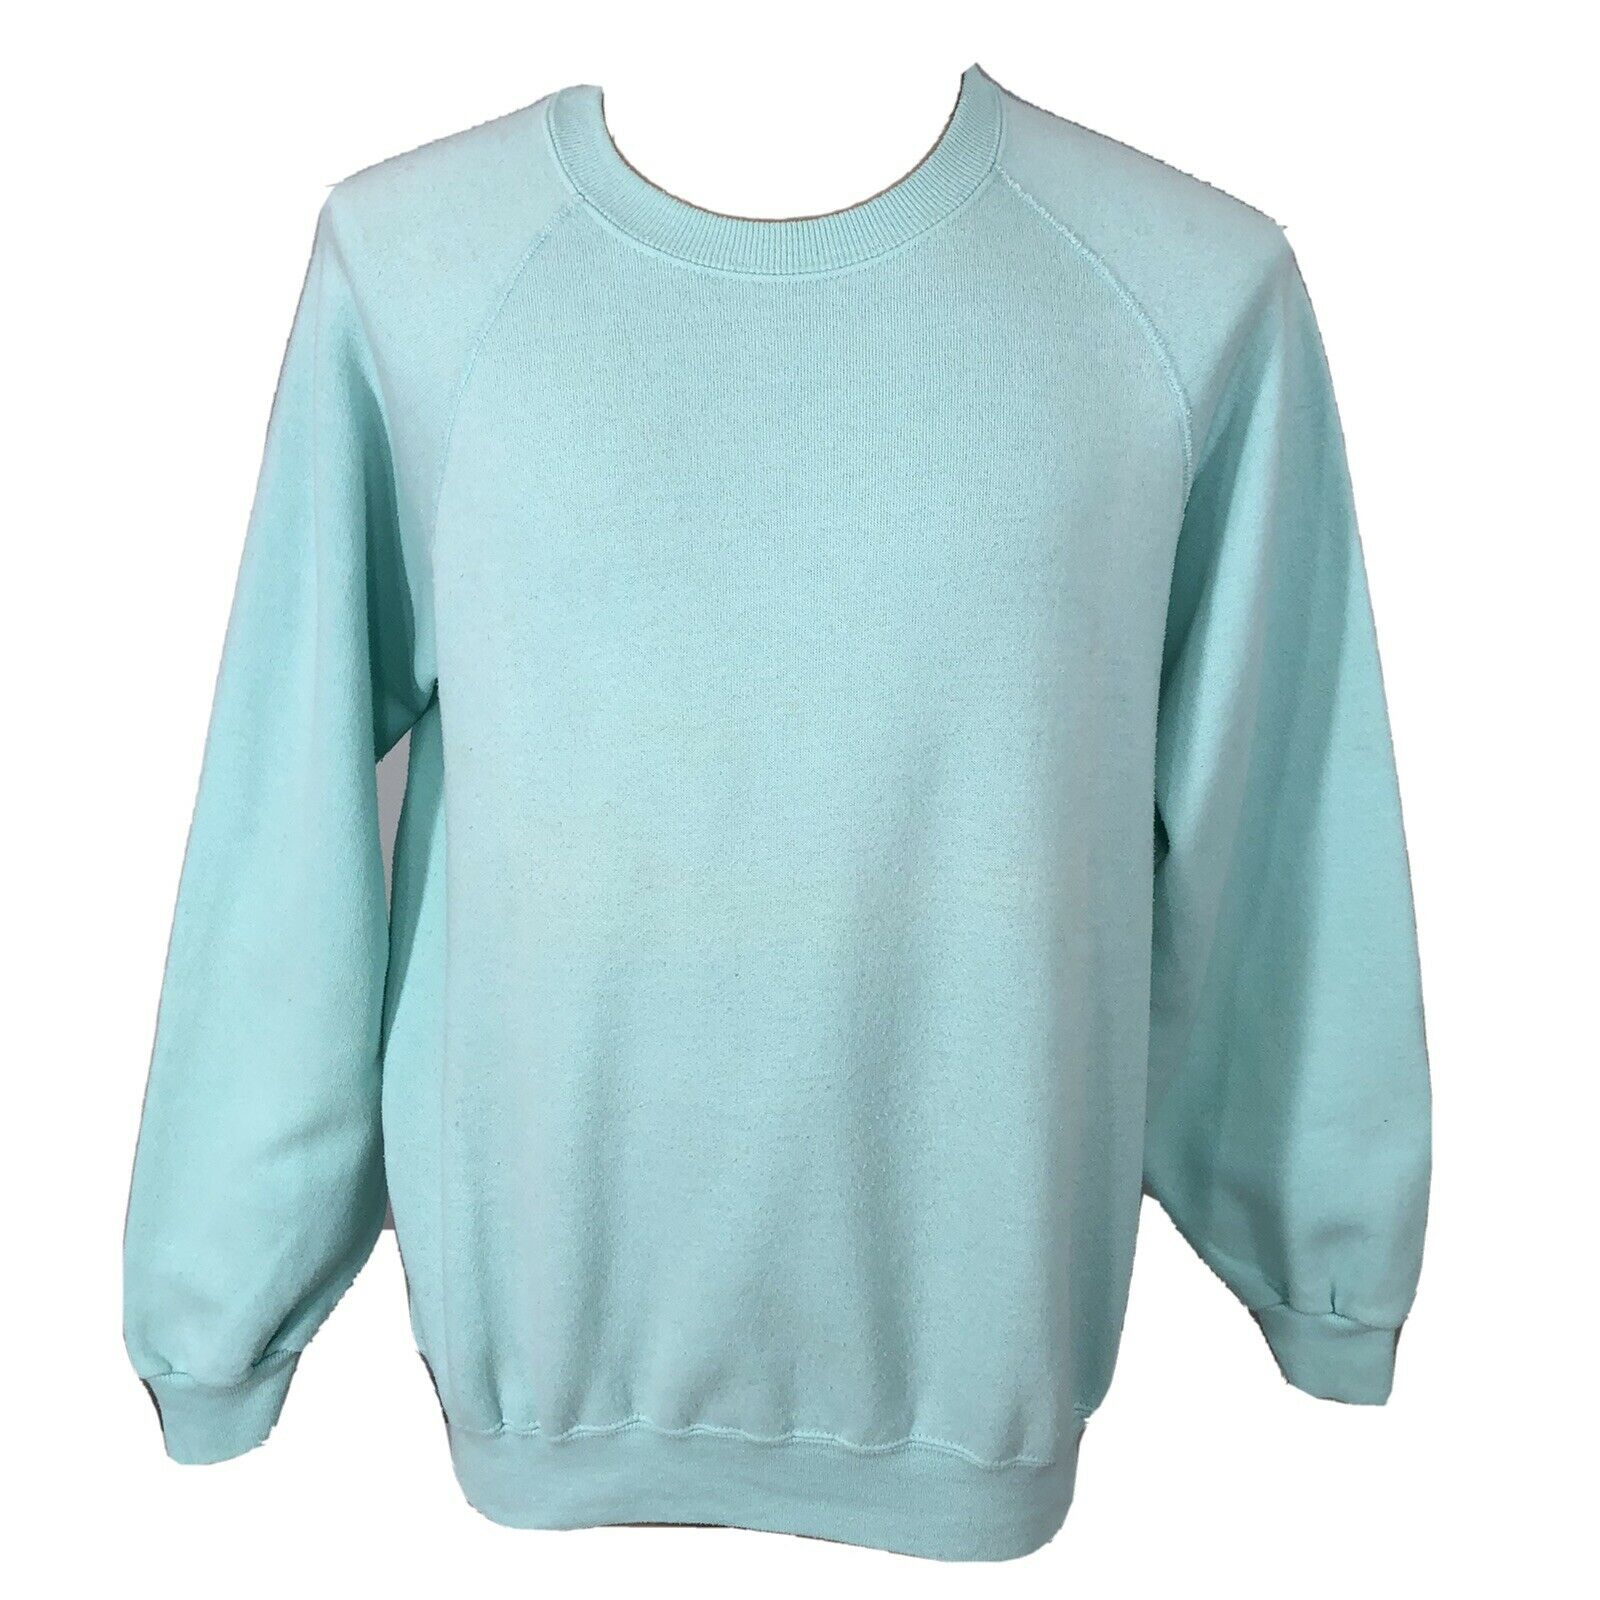 Vintage 80s Light Turquoise Blue Cotton Blend Sweatshirt Unisex L/xl 90s Lee Usa